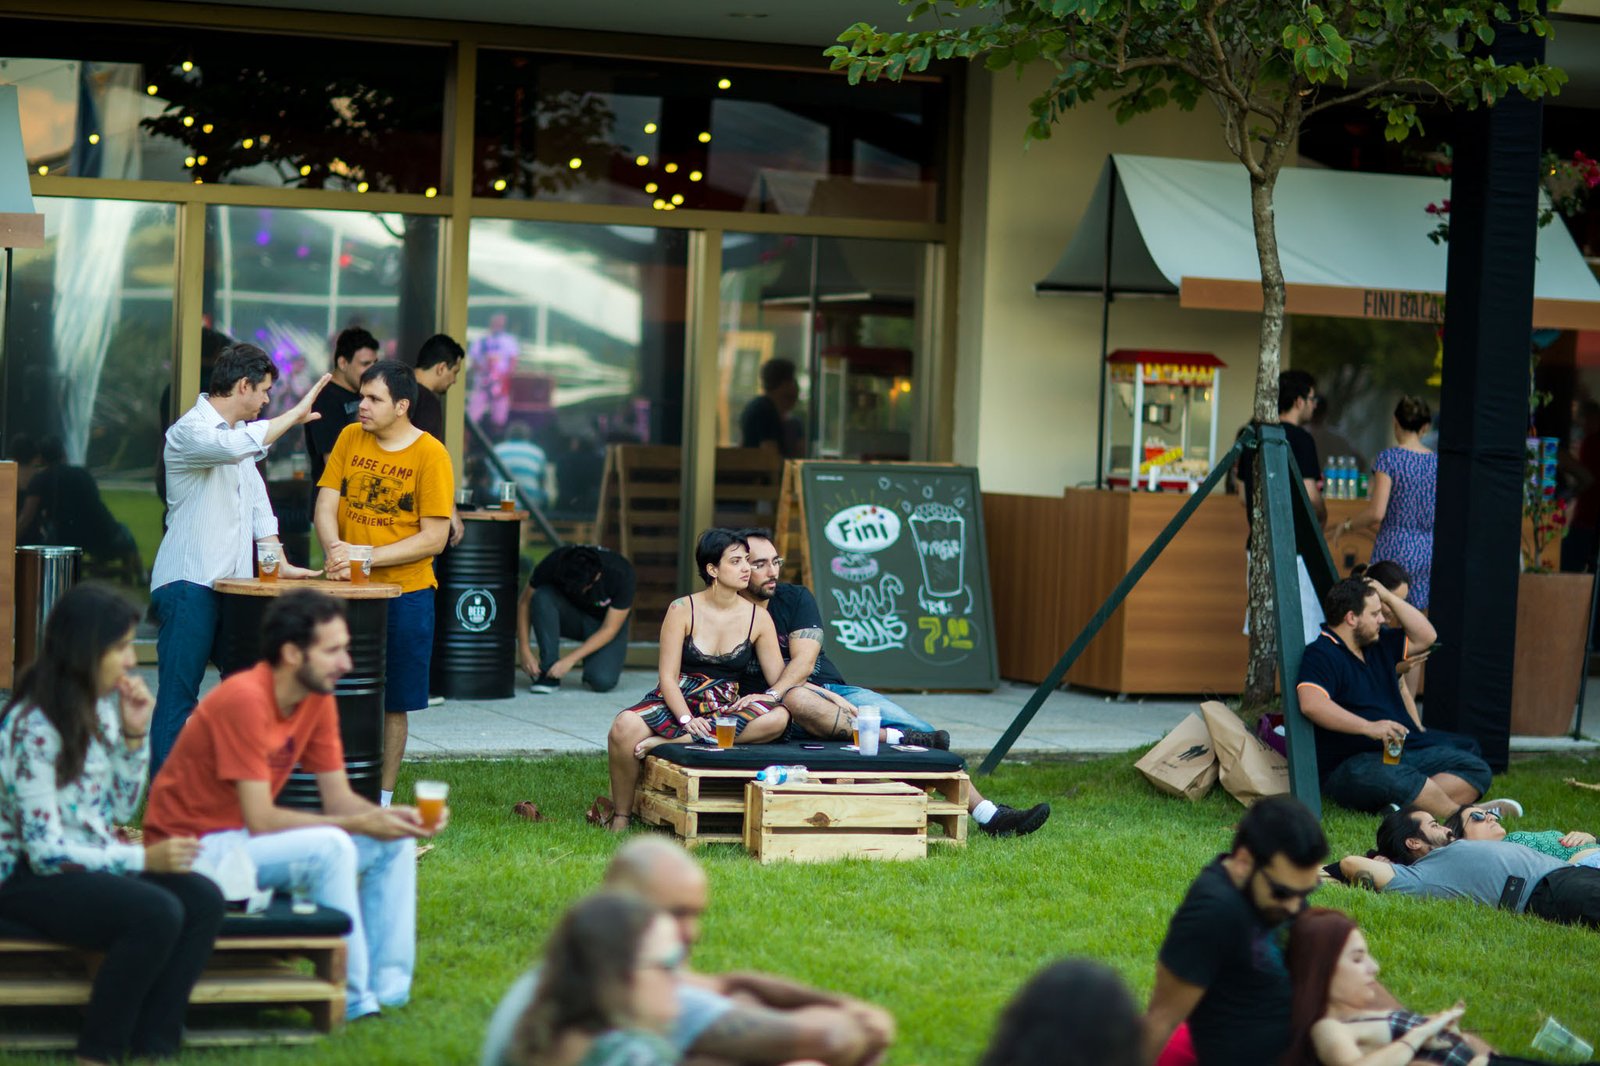 Beer & Garden traz o melhor da cerveja artesanal, música e gastronomia num ambiente ao ar livre